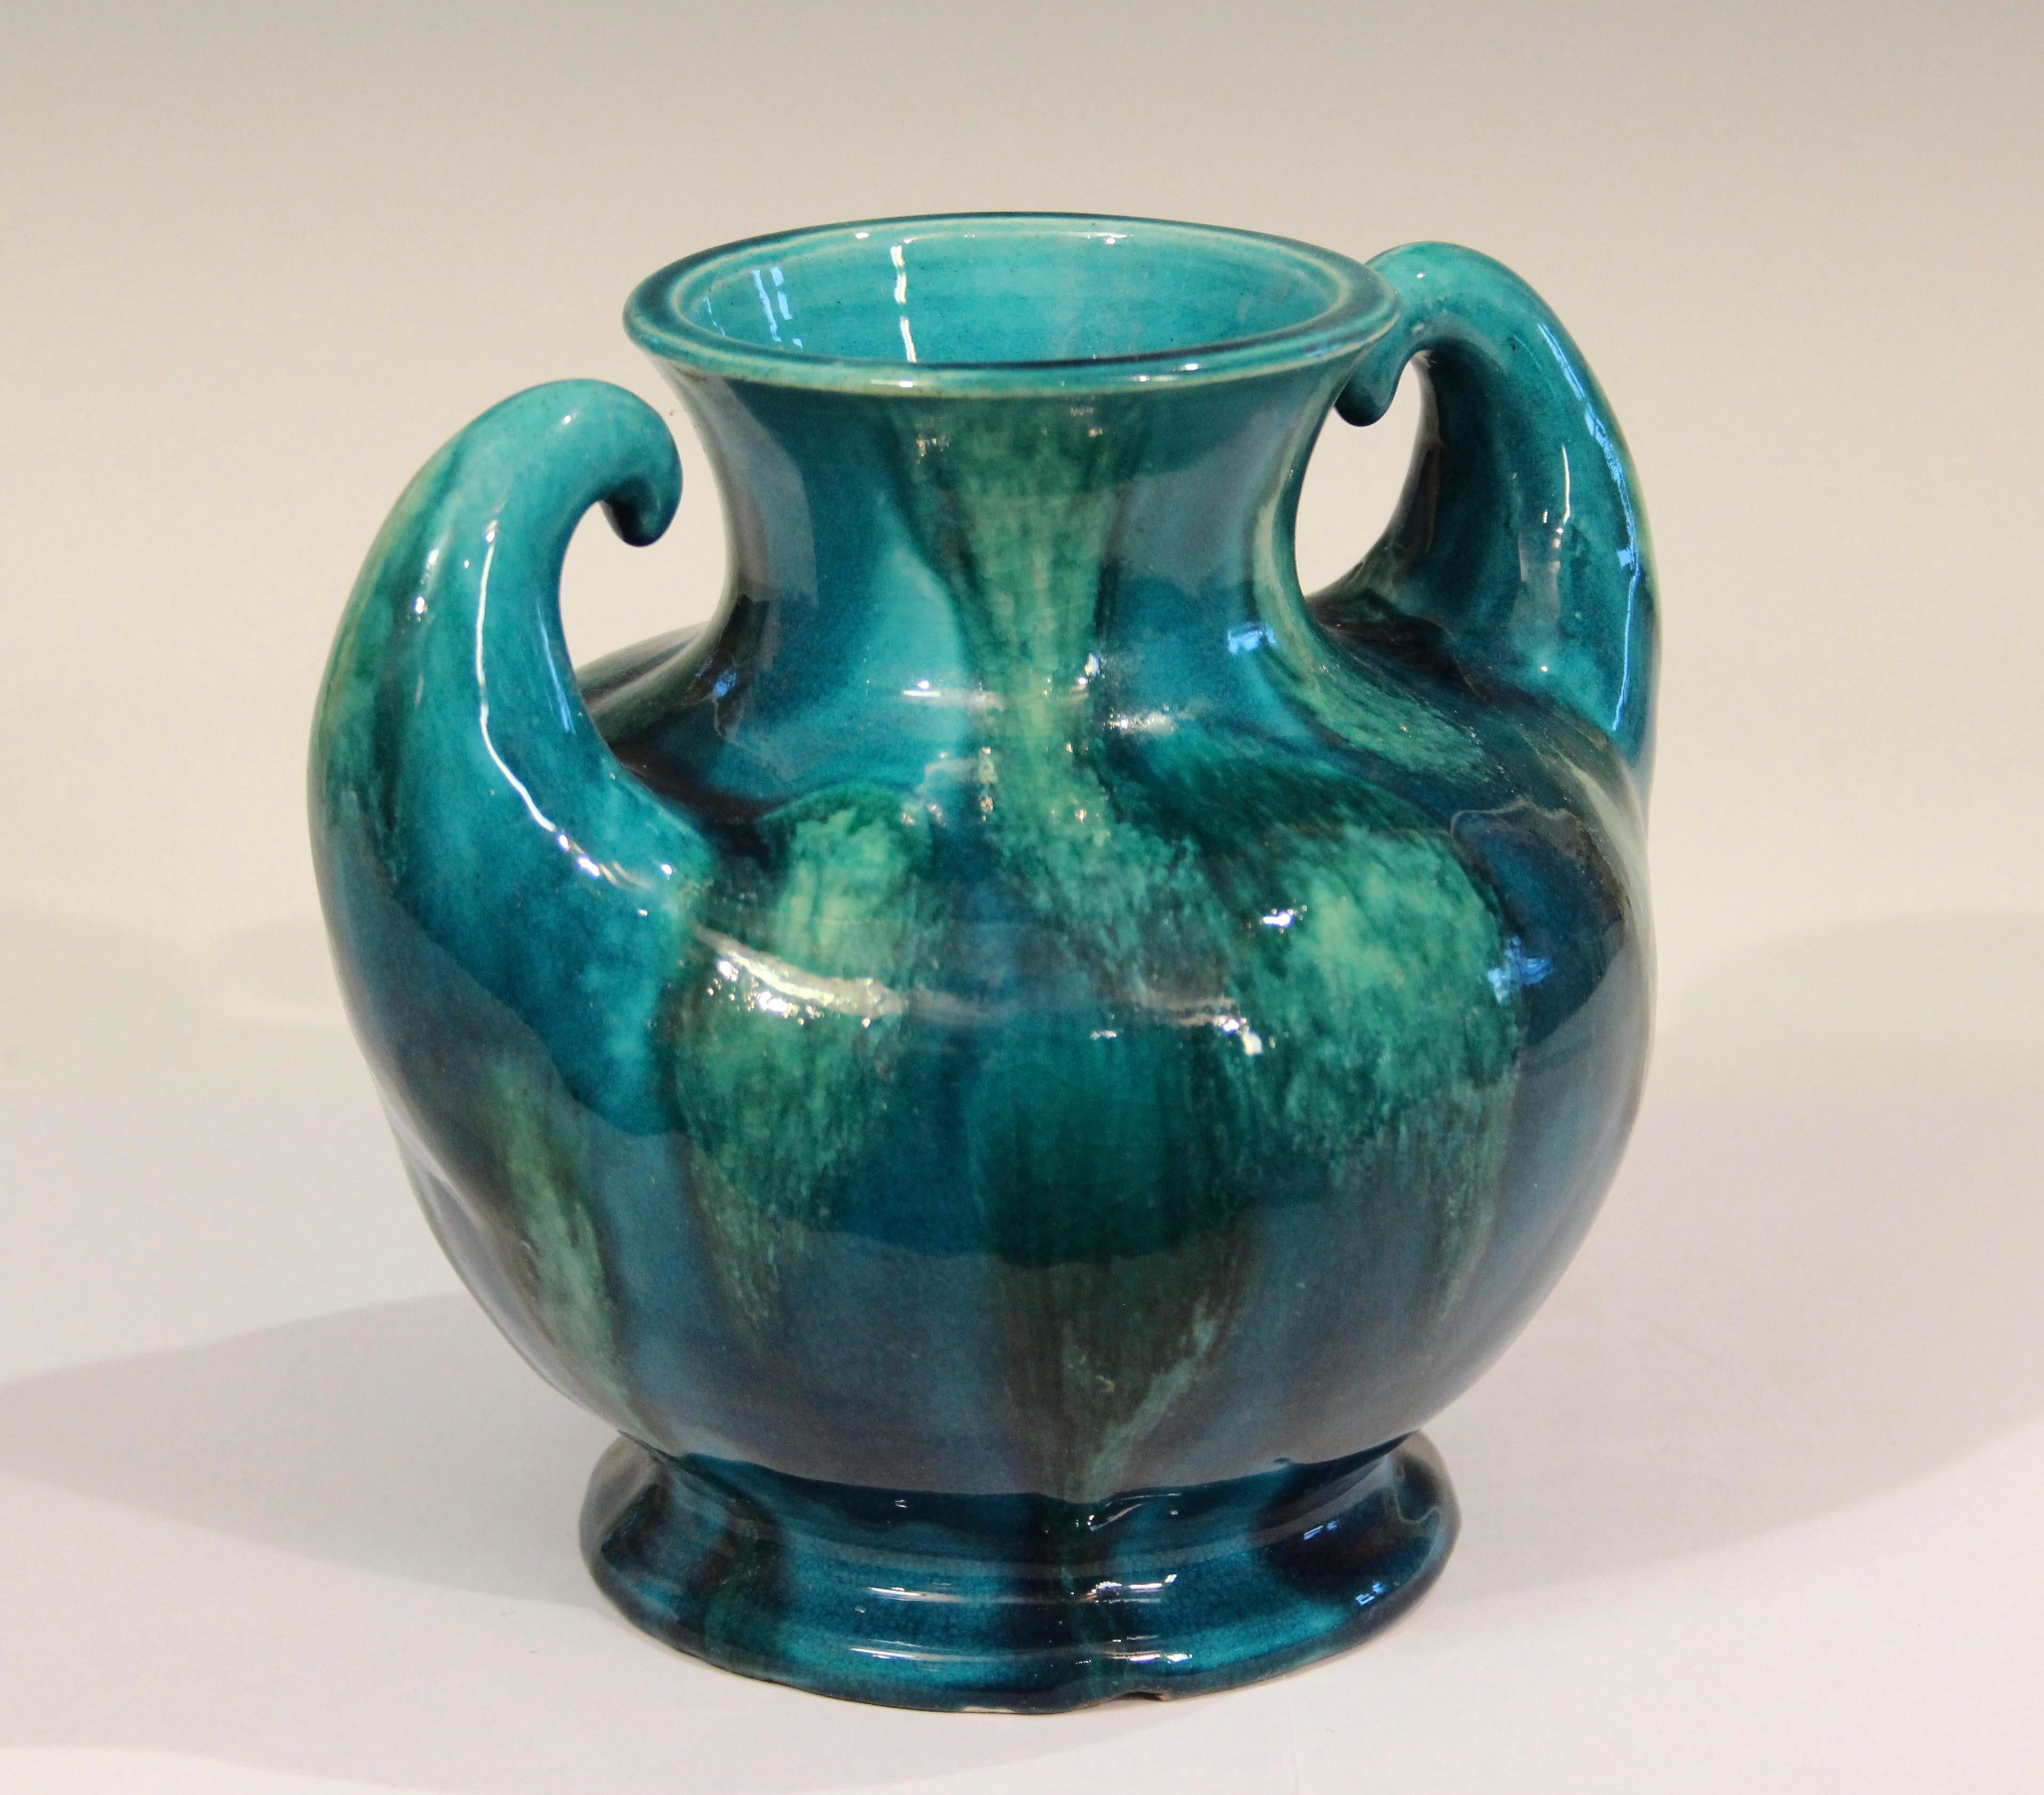 awaji pottery vase